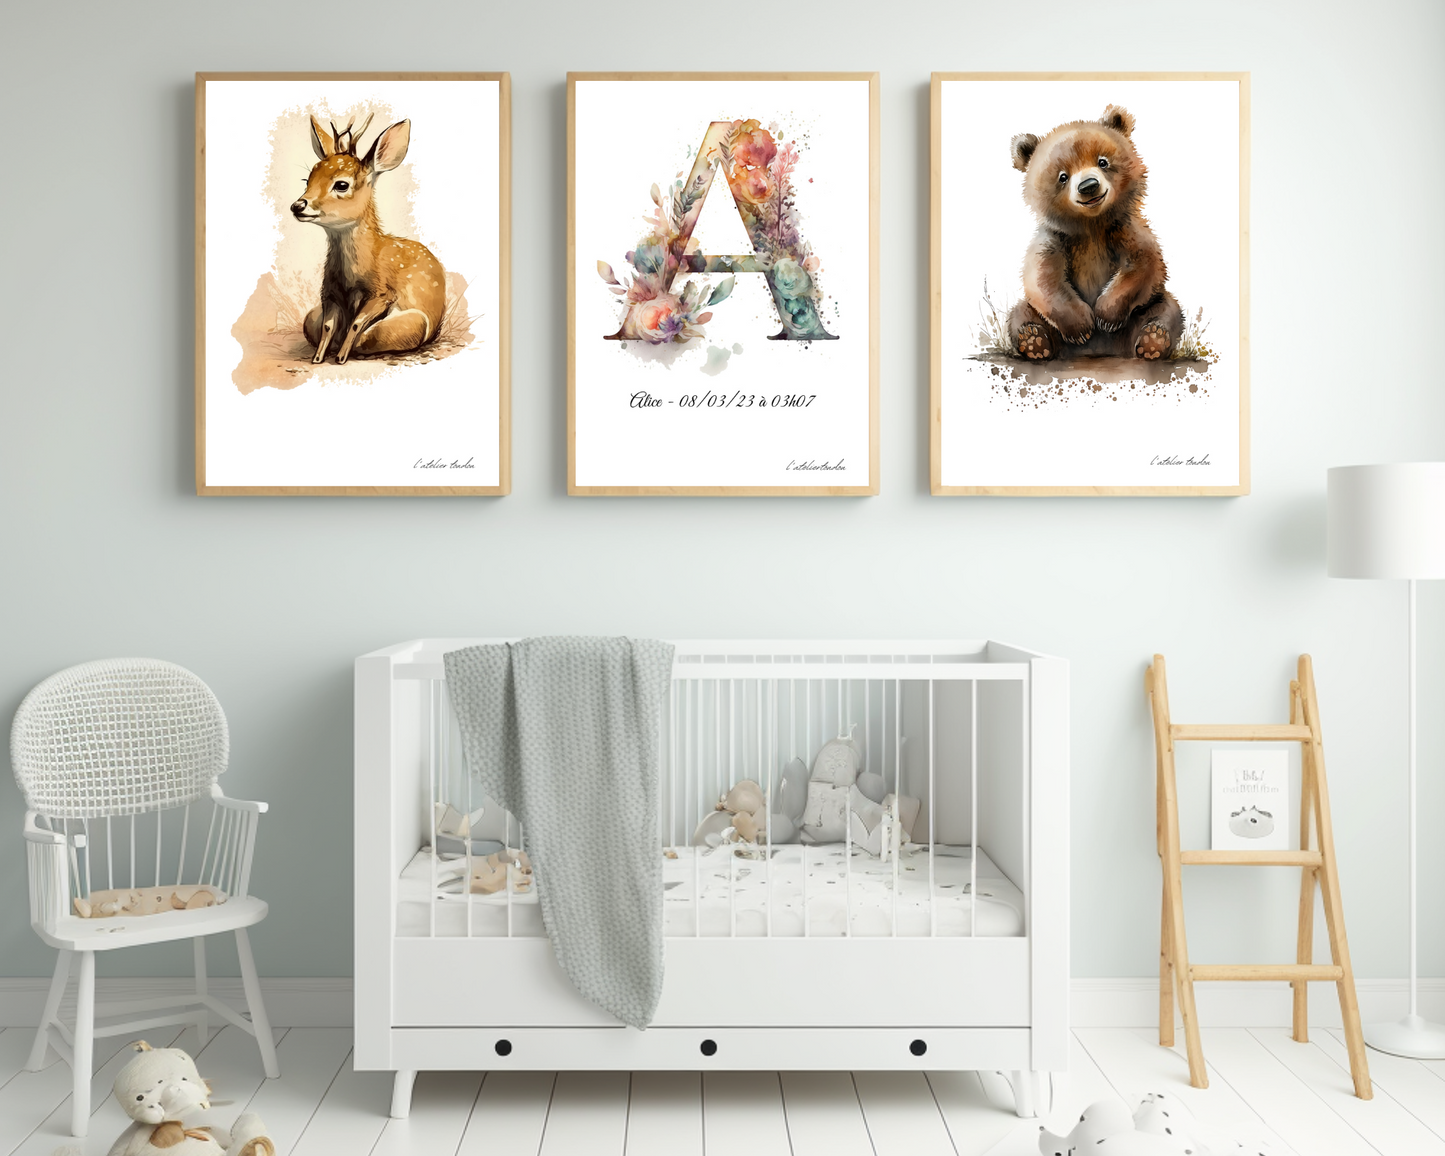 Décoration murale chambre bébé/enfant - Lot 3 illustrations - Thème aquarel - 2 animaux